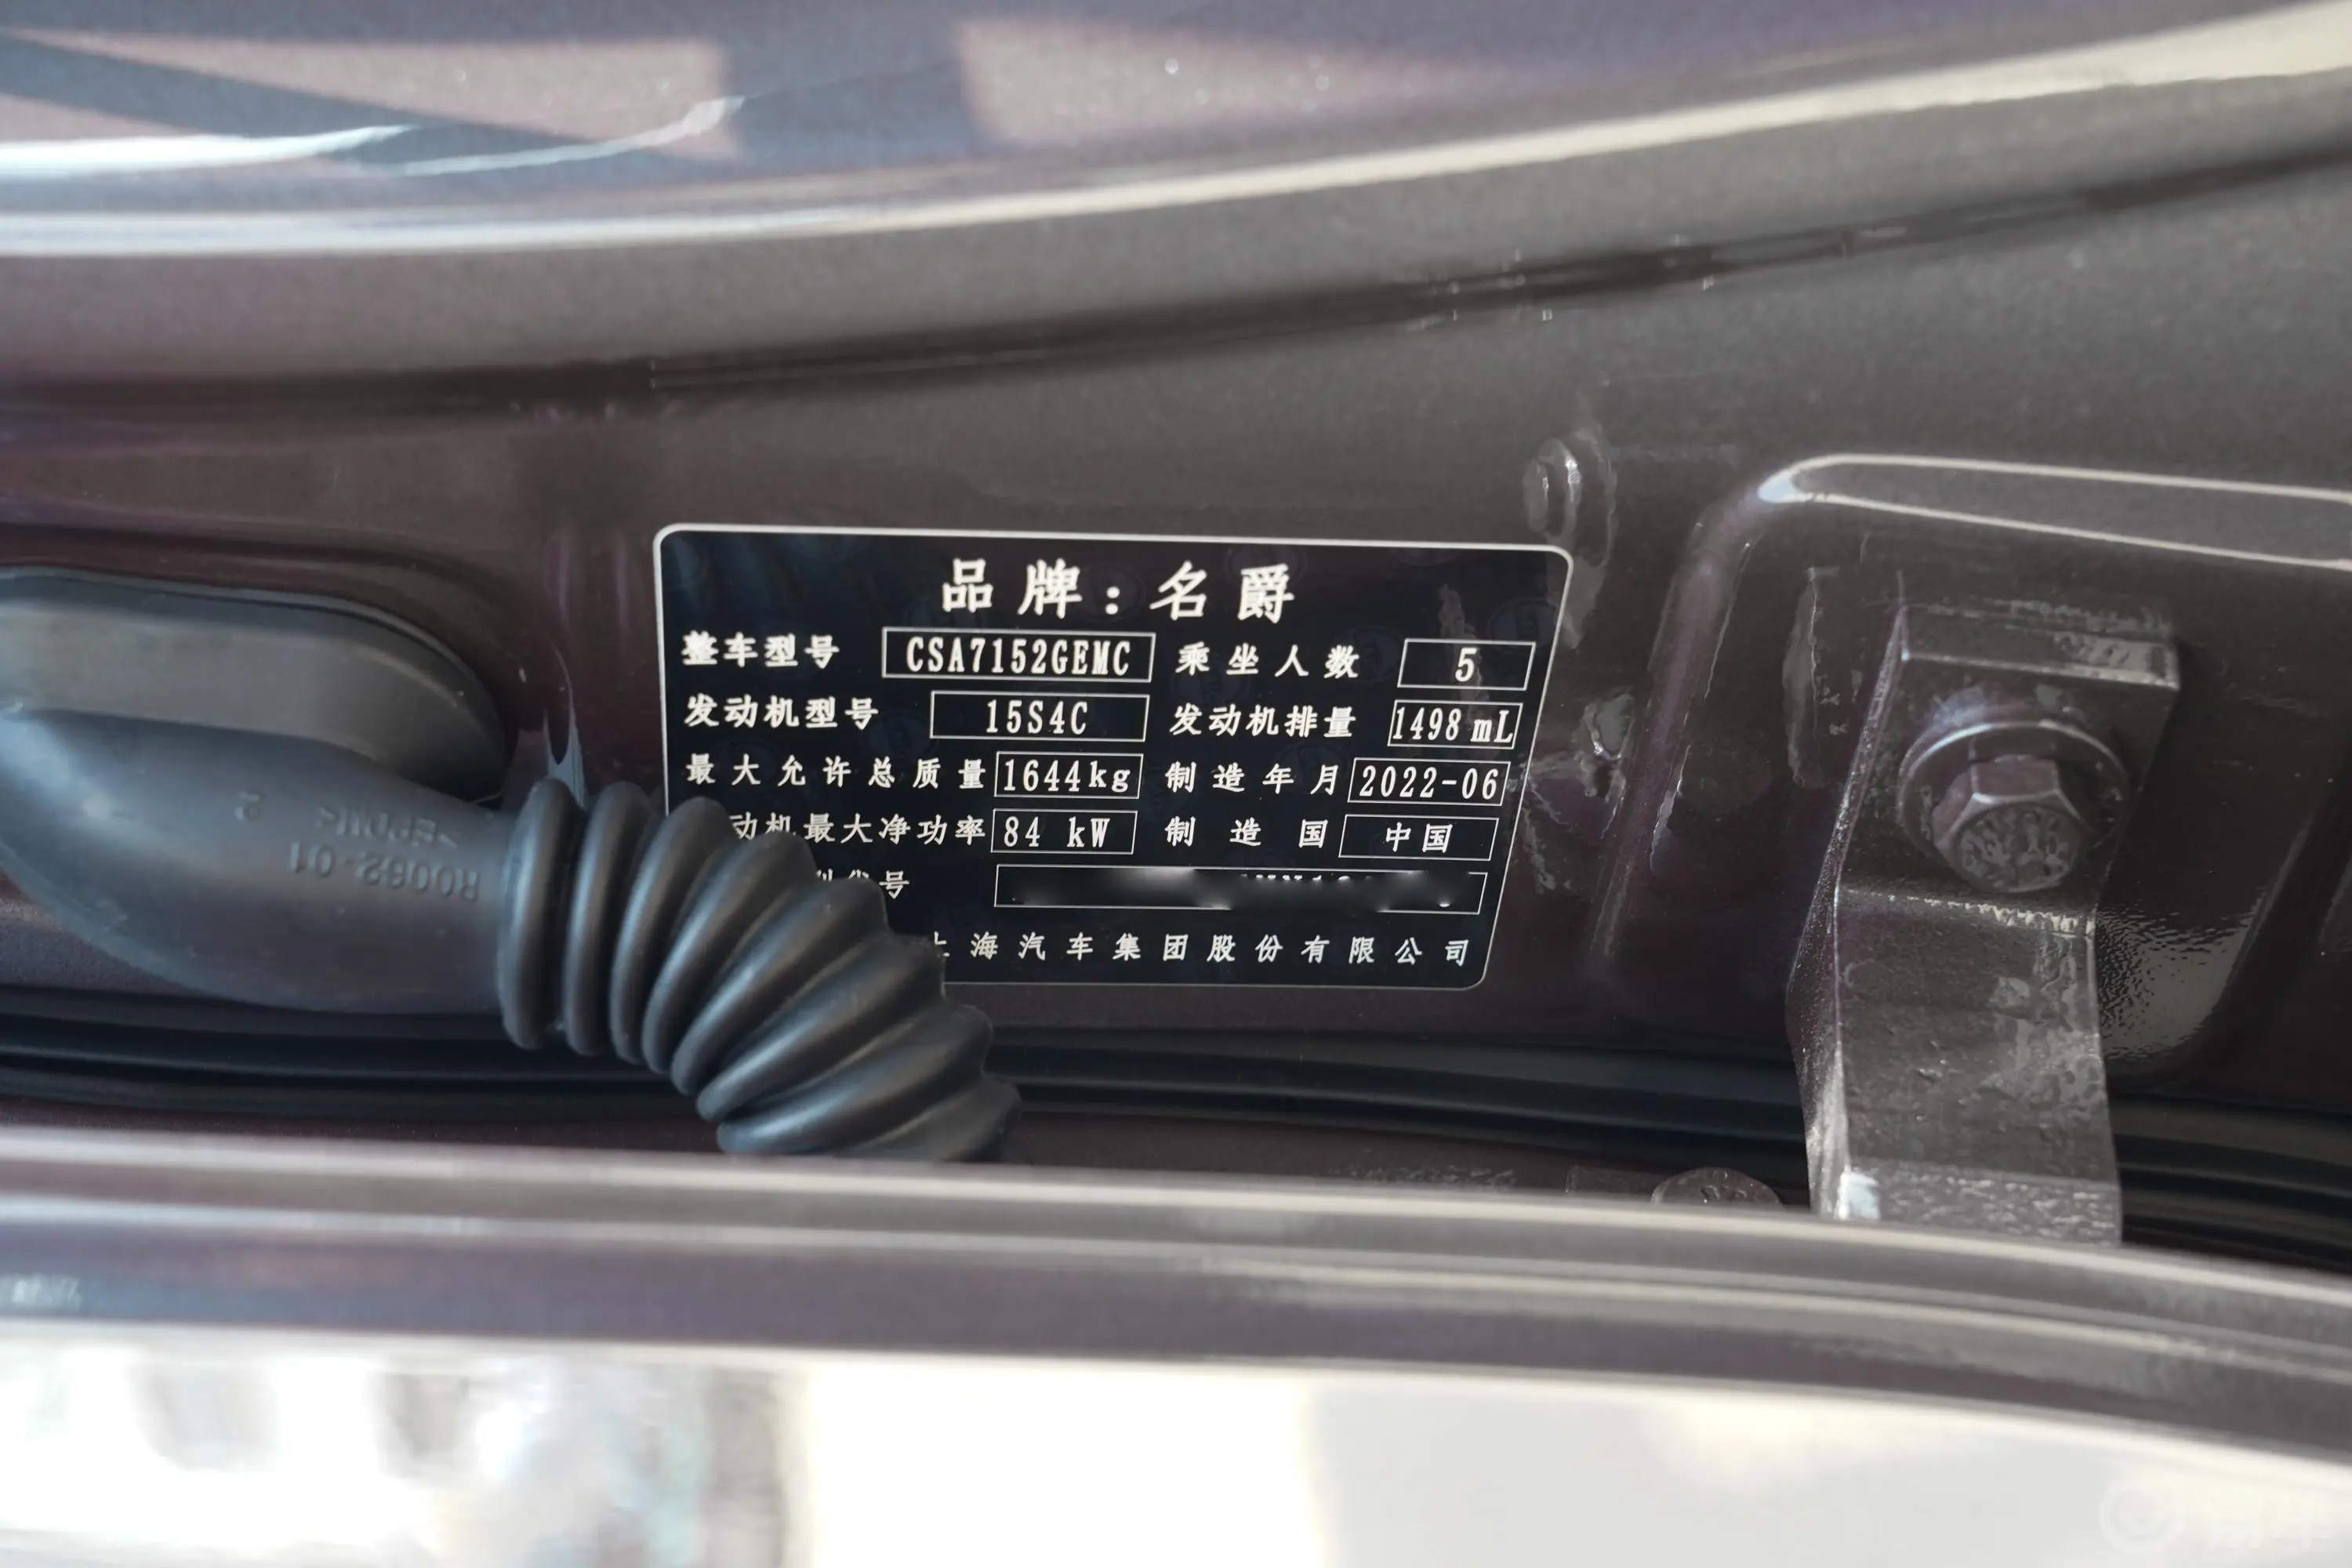 MG5180DVVT 手动青春风尚版车辆信息铭牌